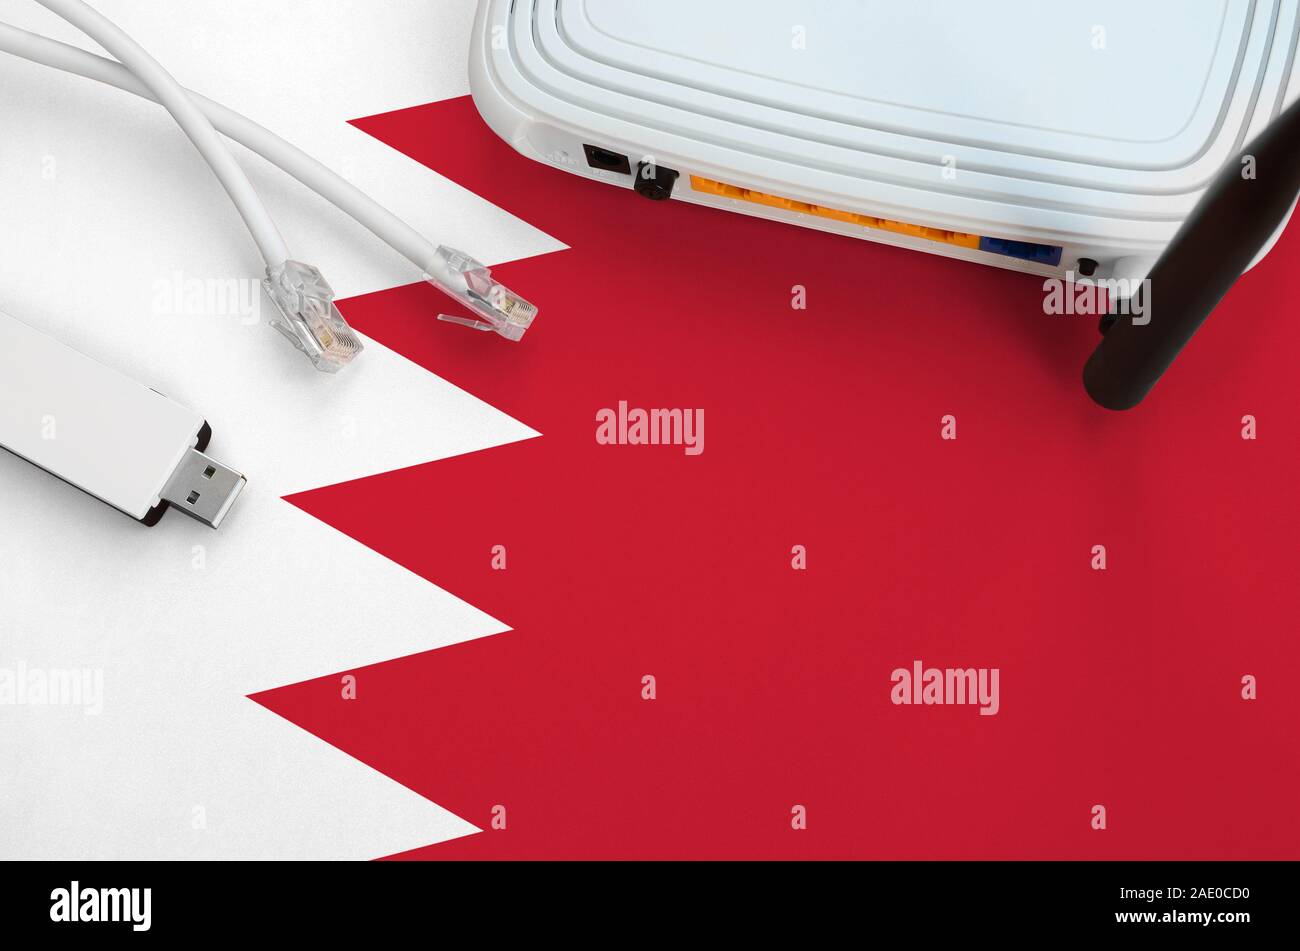 Drapeau Bahreïn représenté sur le tableau avec une connexion internet par câble RJ45, usb sans fil carte wi-fi et de routeur. Concept de connexion Internet Banque D'Images